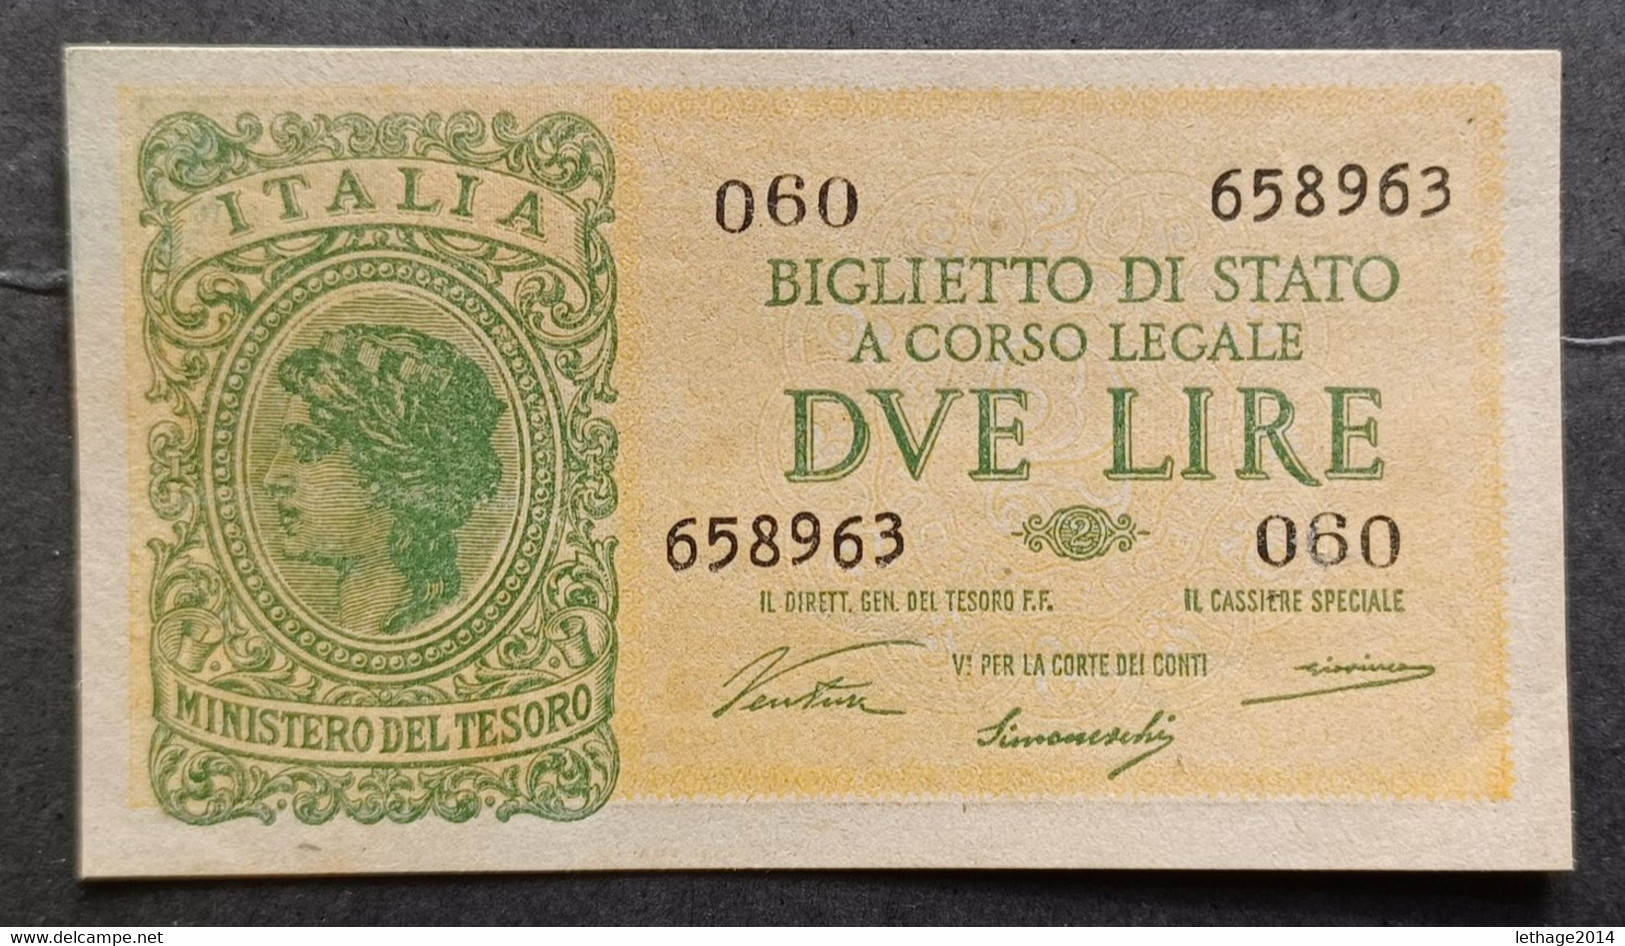 BANKNOTE REGNO D ITALIA 2 LIRE 1944 VENTURINI SIMONESCHI GIOVINCO SUPERBA FDS - Italia – 2 Lire